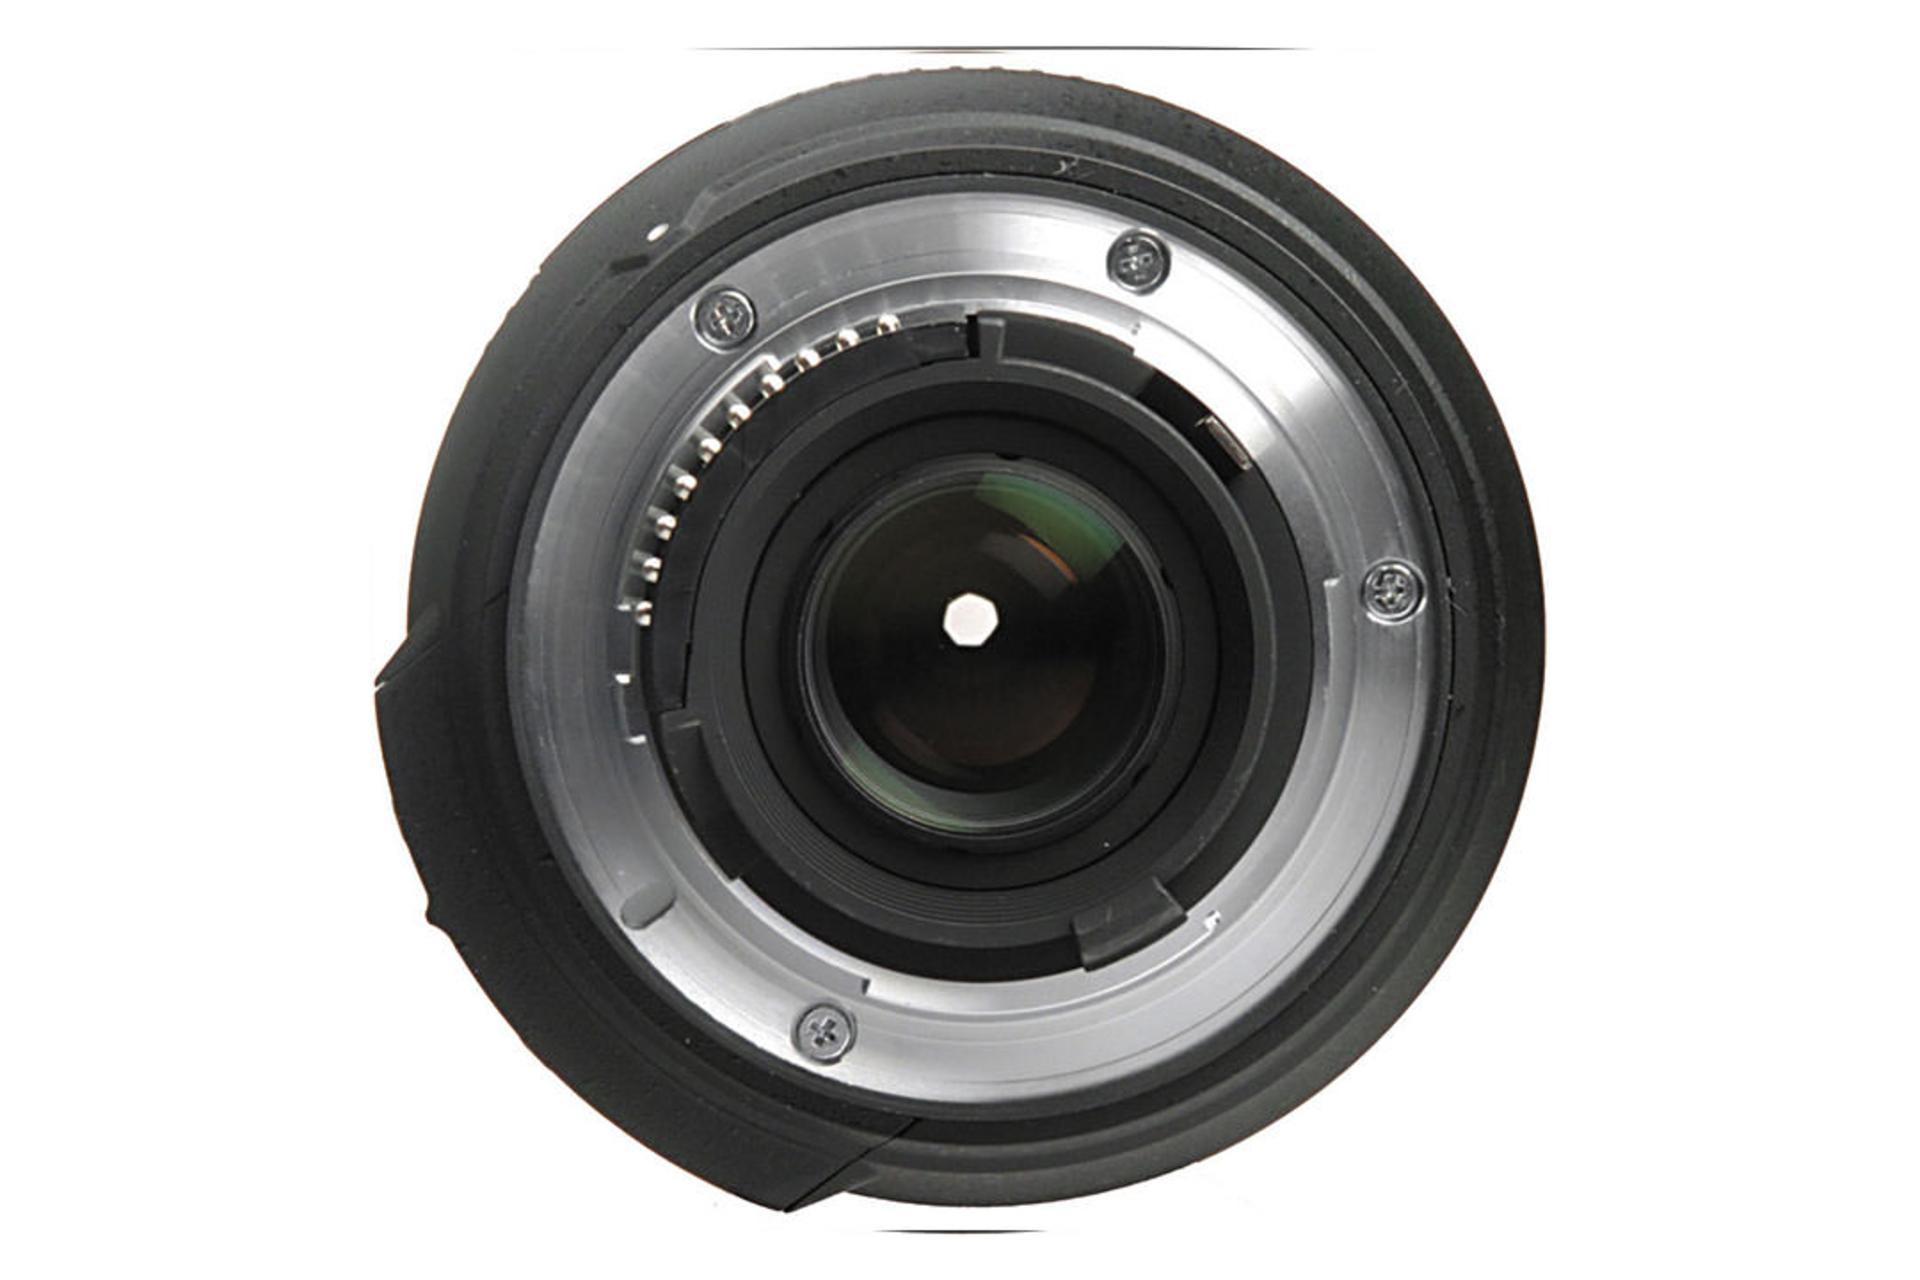 Nikon AF-S DX Nikkor 18-200mm f/3.5-5.6G ED VR II	